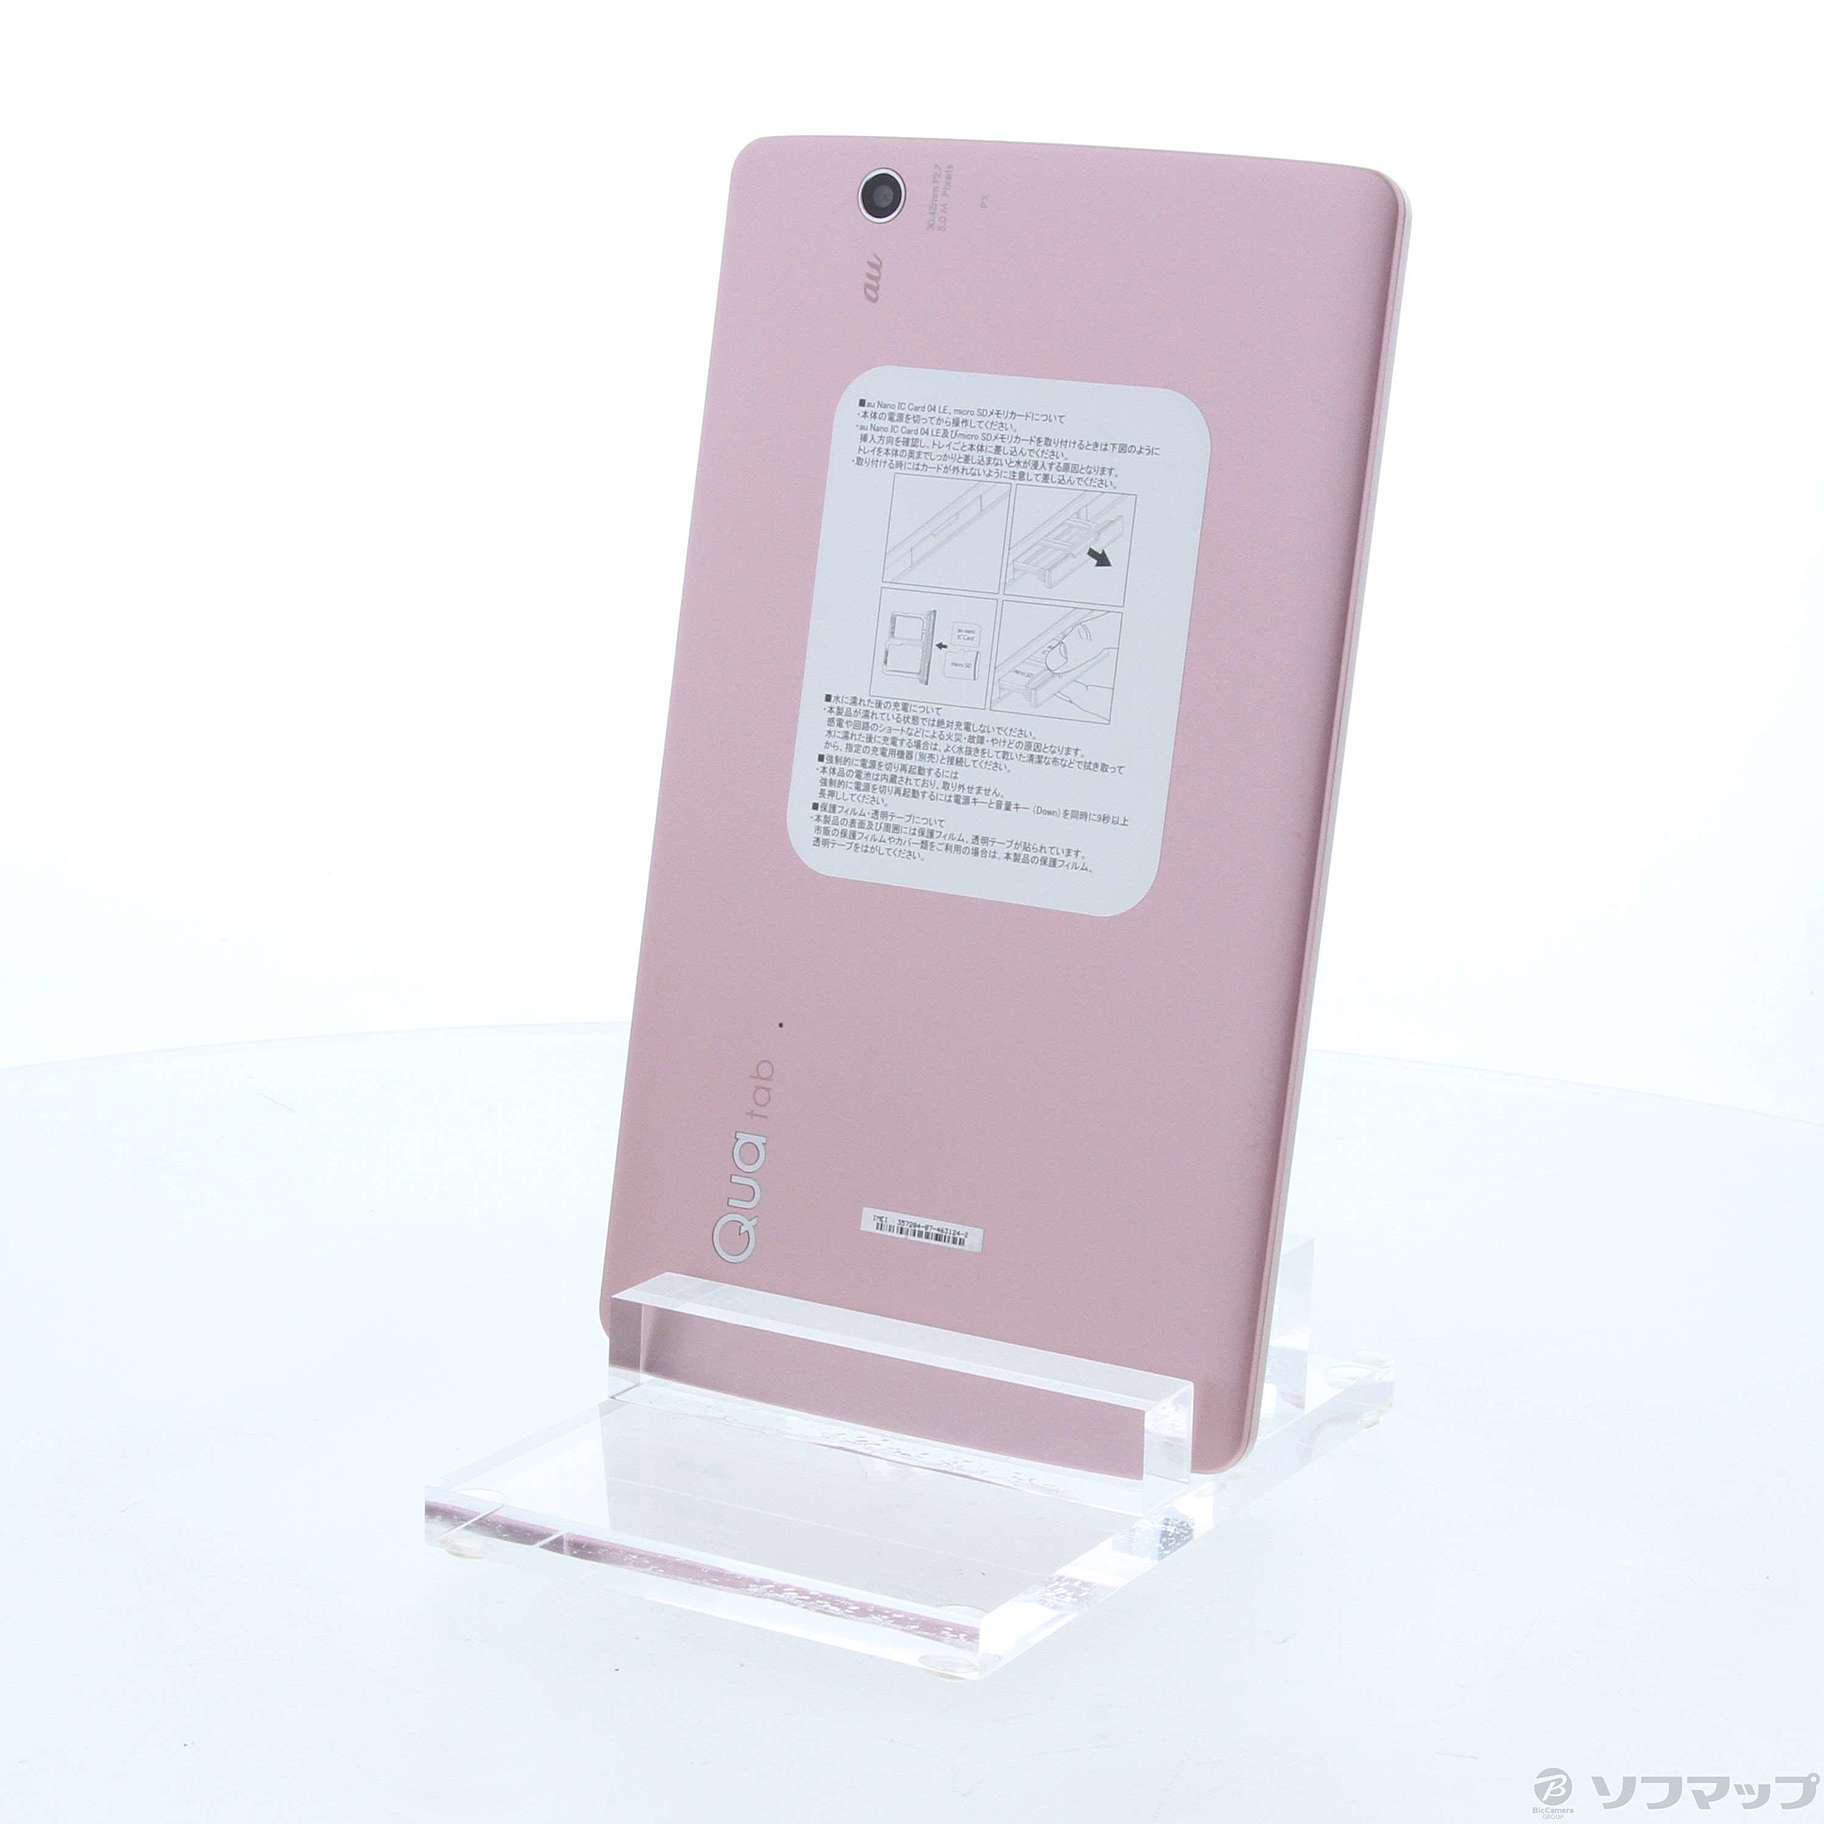 限られた特典の-LG(エルジー) Qua tab PX 16GB ピンク LGT31 au ：ソフマップ中古専門店 -  lab.comfamiliar.com